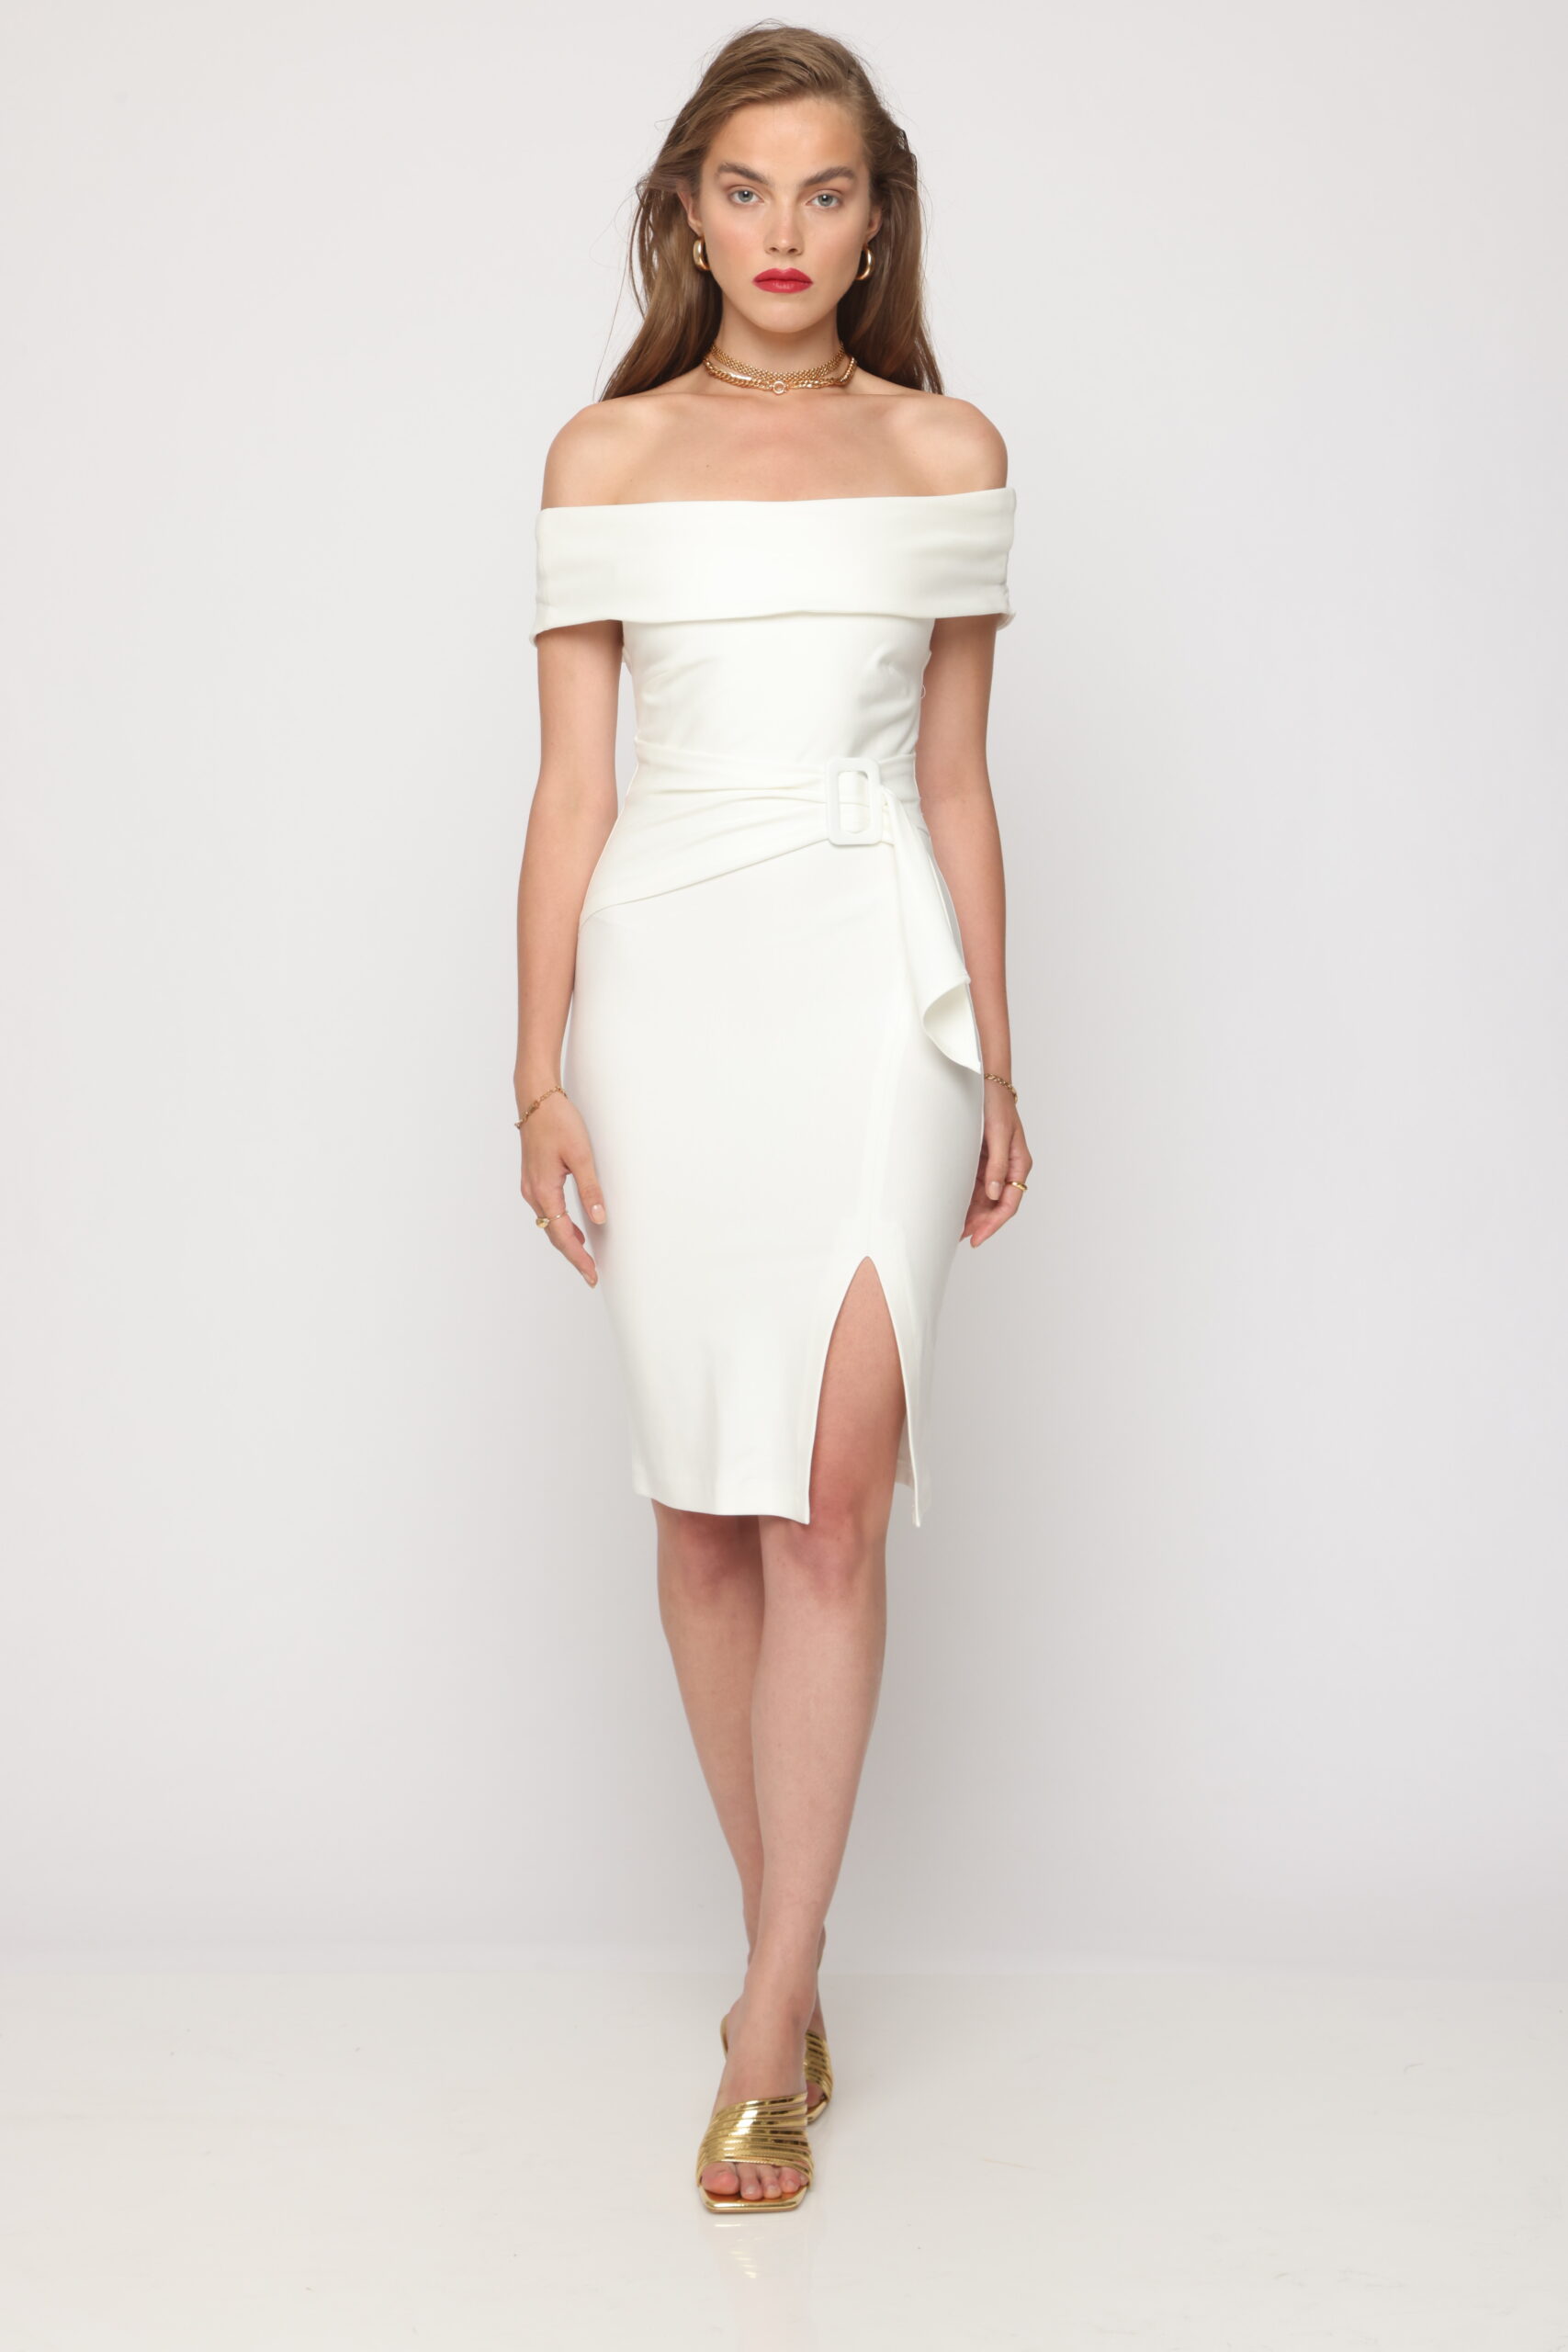 שמלה מידי אבזם לבנה באורך מידי מבד מחטב עם שסע וחגורה מובנת